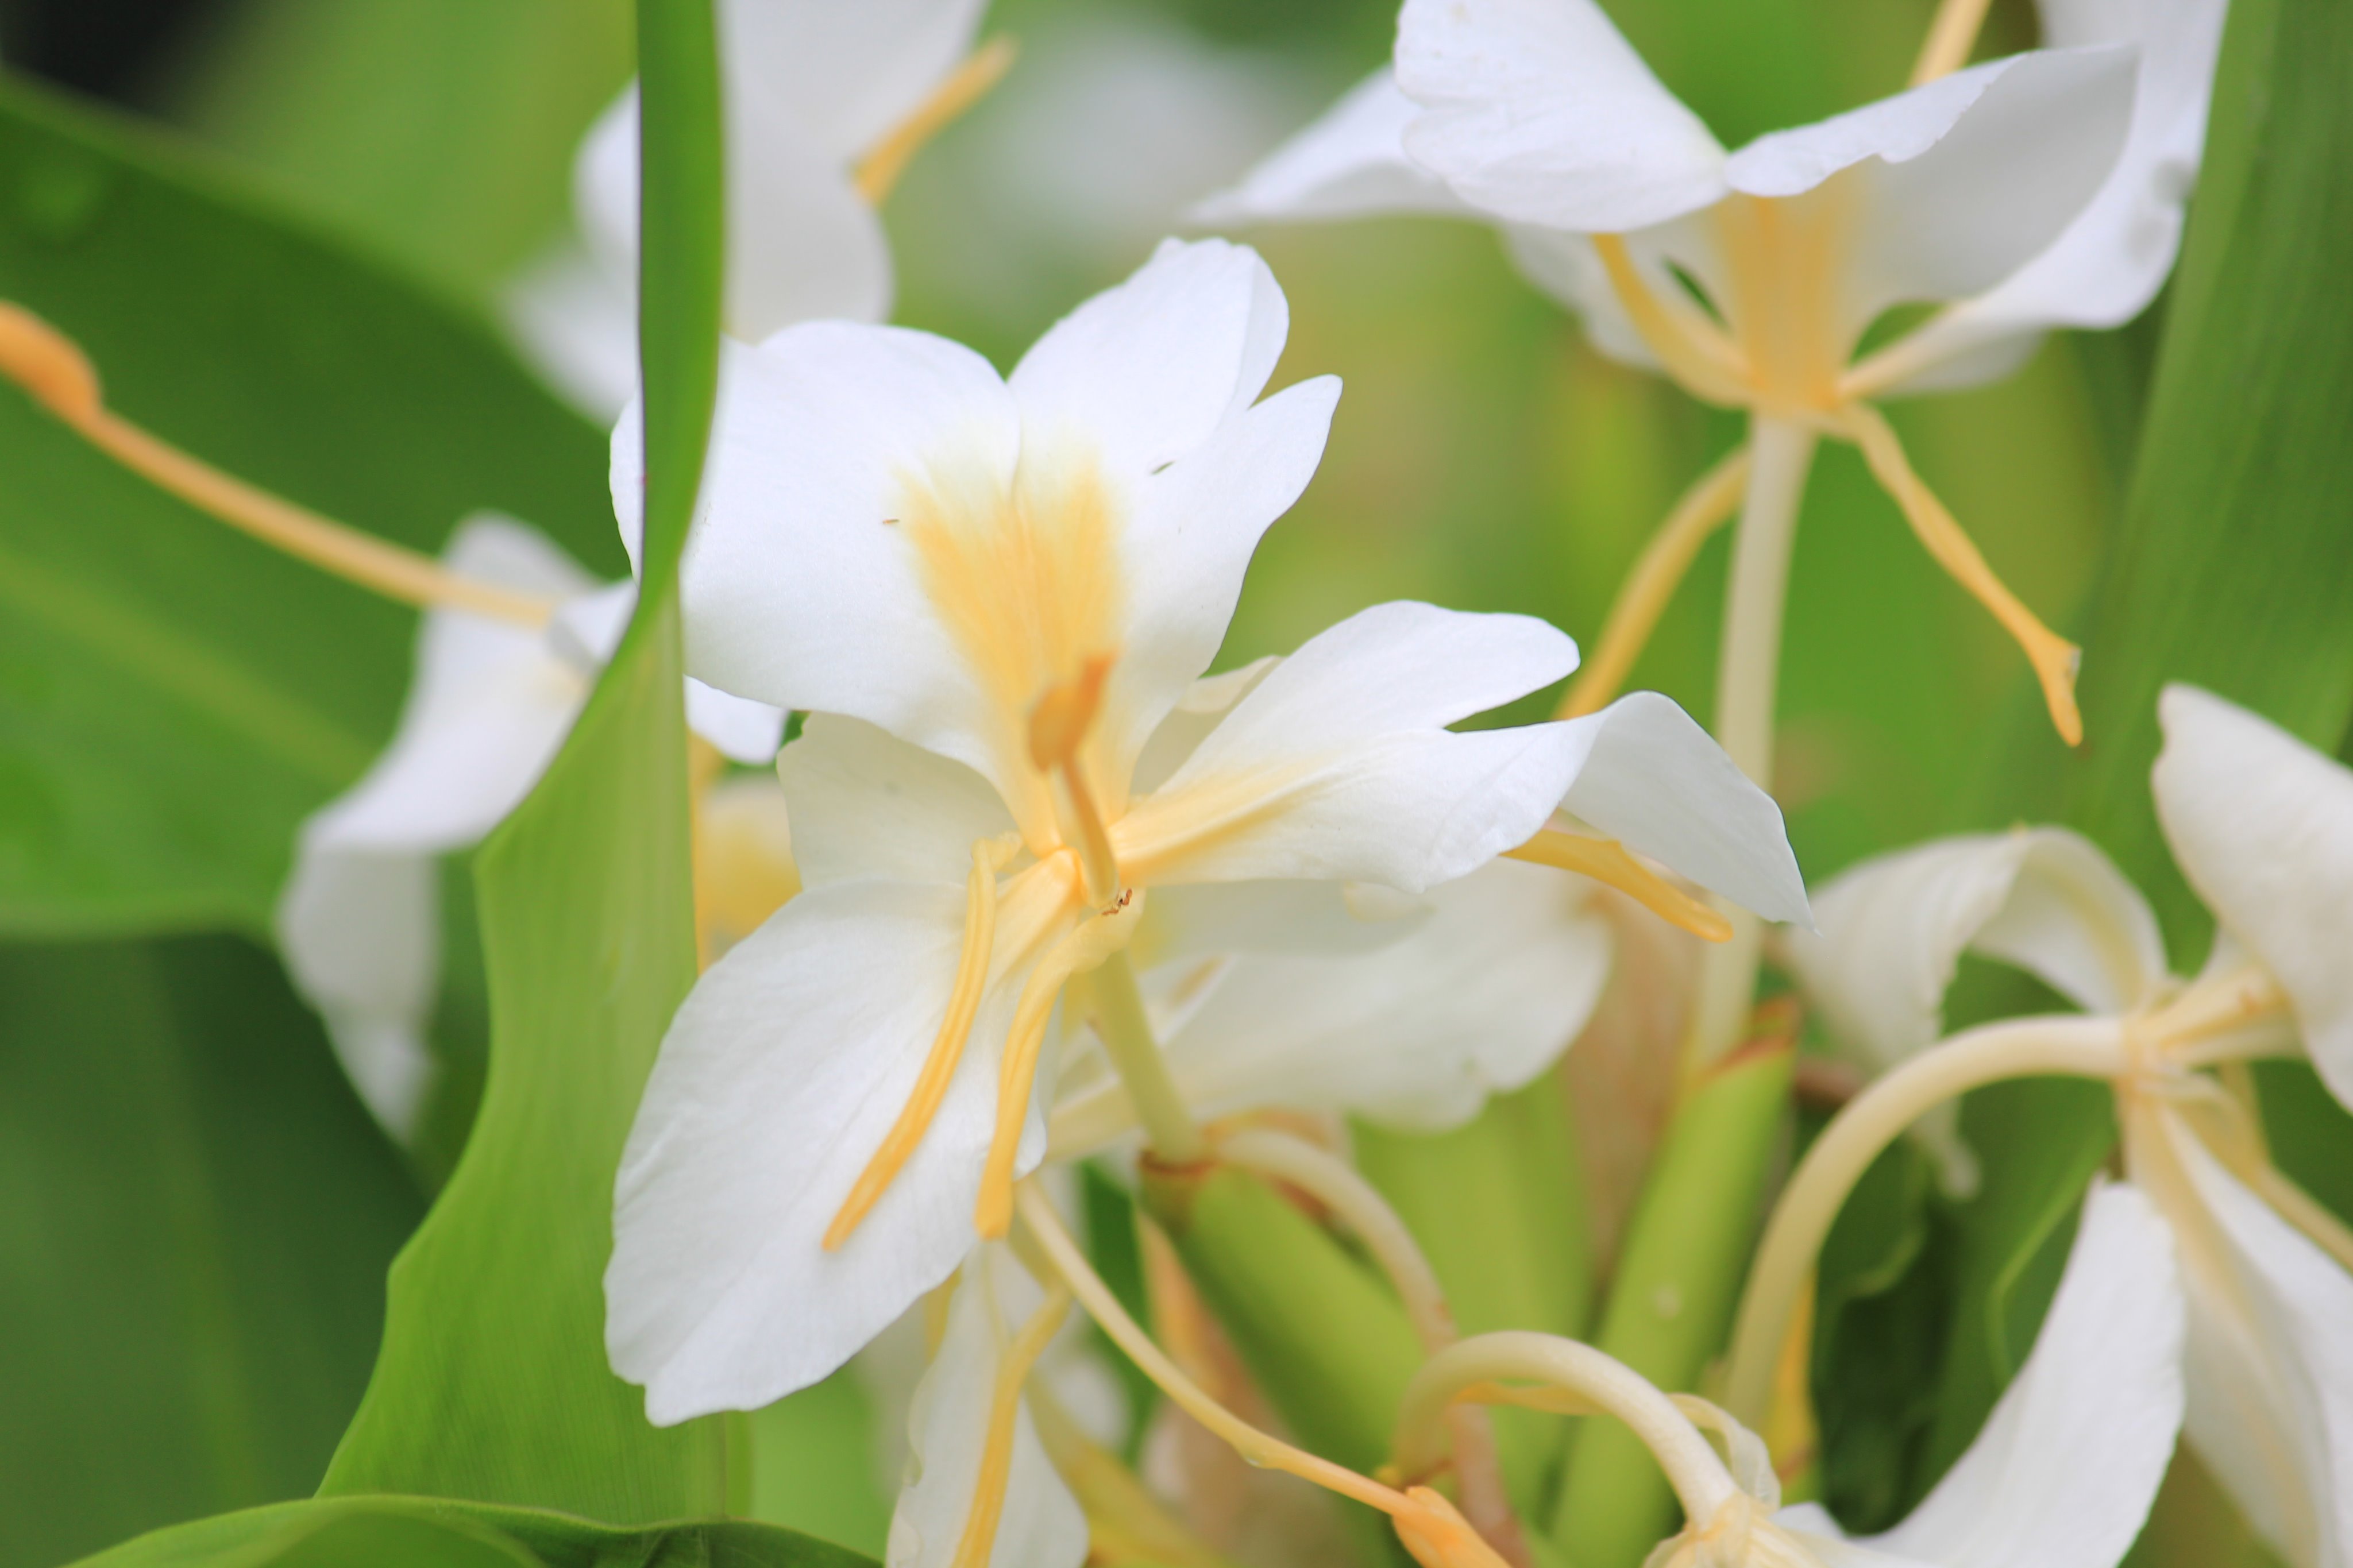 咲くやこの花館 ホワイトジンジャー が開花中です 学名の Hedychium はギリシャ語の Hedys 甘い と Chion 雪 に由来するそうです 豊かな心 という素敵な花言葉を持つ一方 その強い繁殖力からハワイでは有害植物とされています 咲くやこの